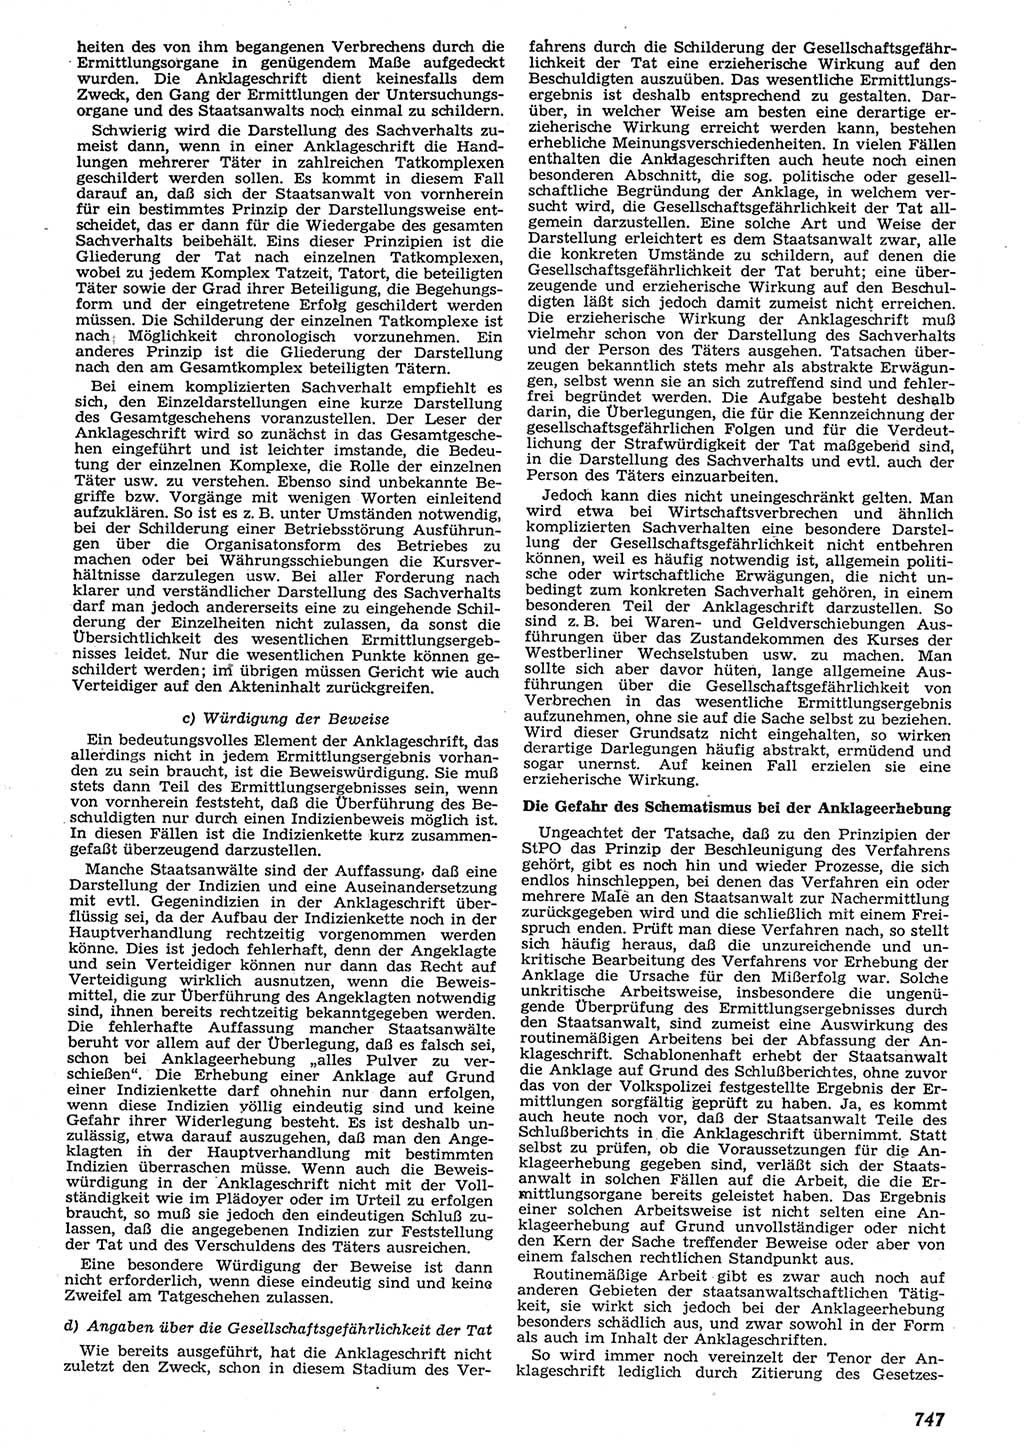 Neue Justiz (NJ), Zeitschrift für Recht und Rechtswissenschaft [Deutsche Demokratische Republik (DDR)], 10. Jahrgang 1956, Seite 747 (NJ DDR 1956, S. 747)